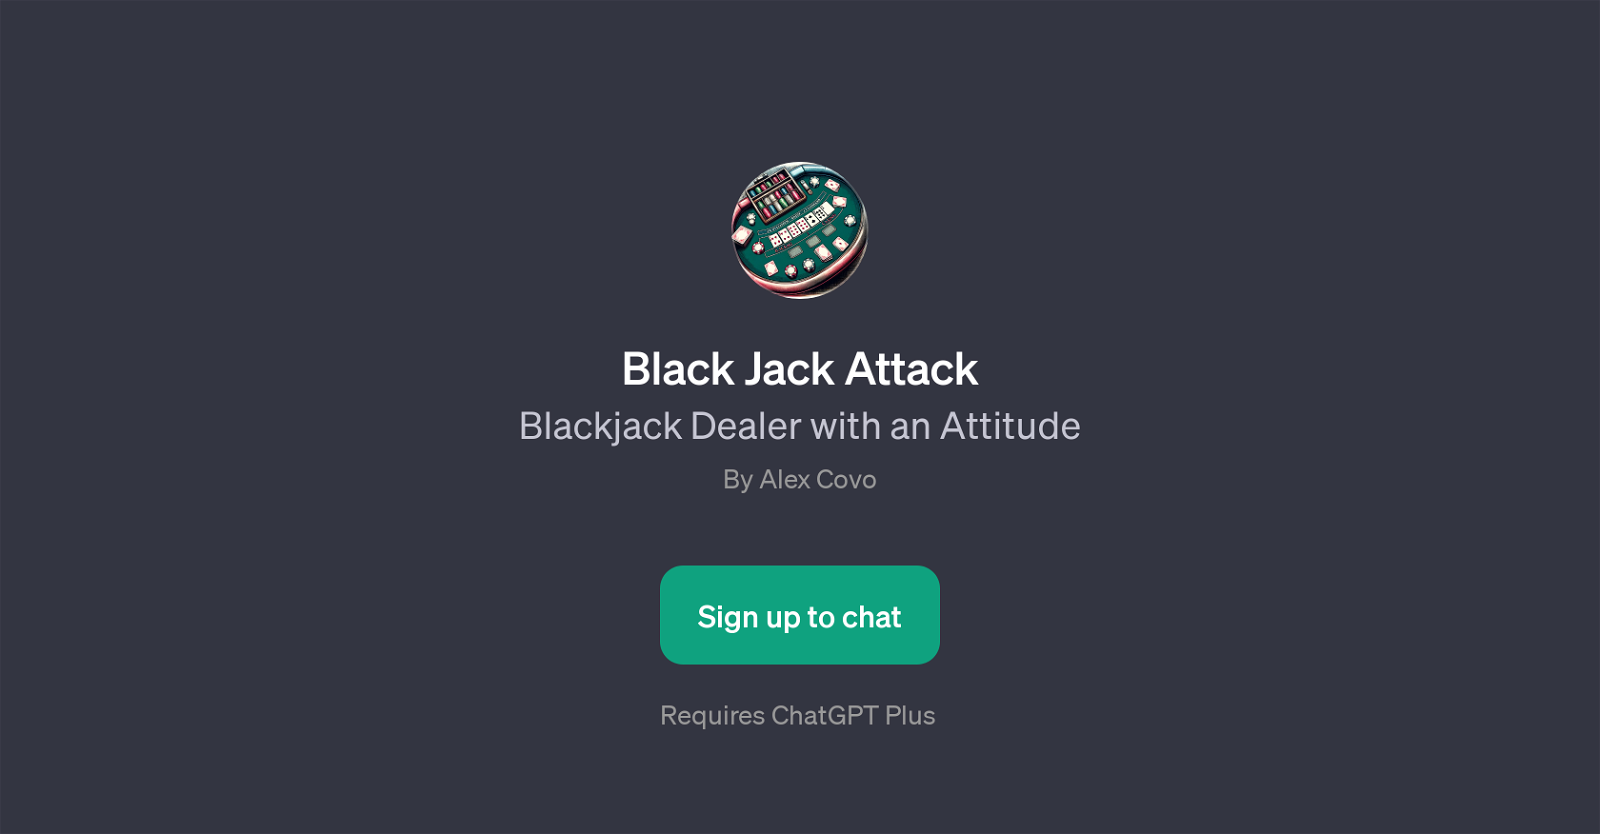 Black Jack Attack website